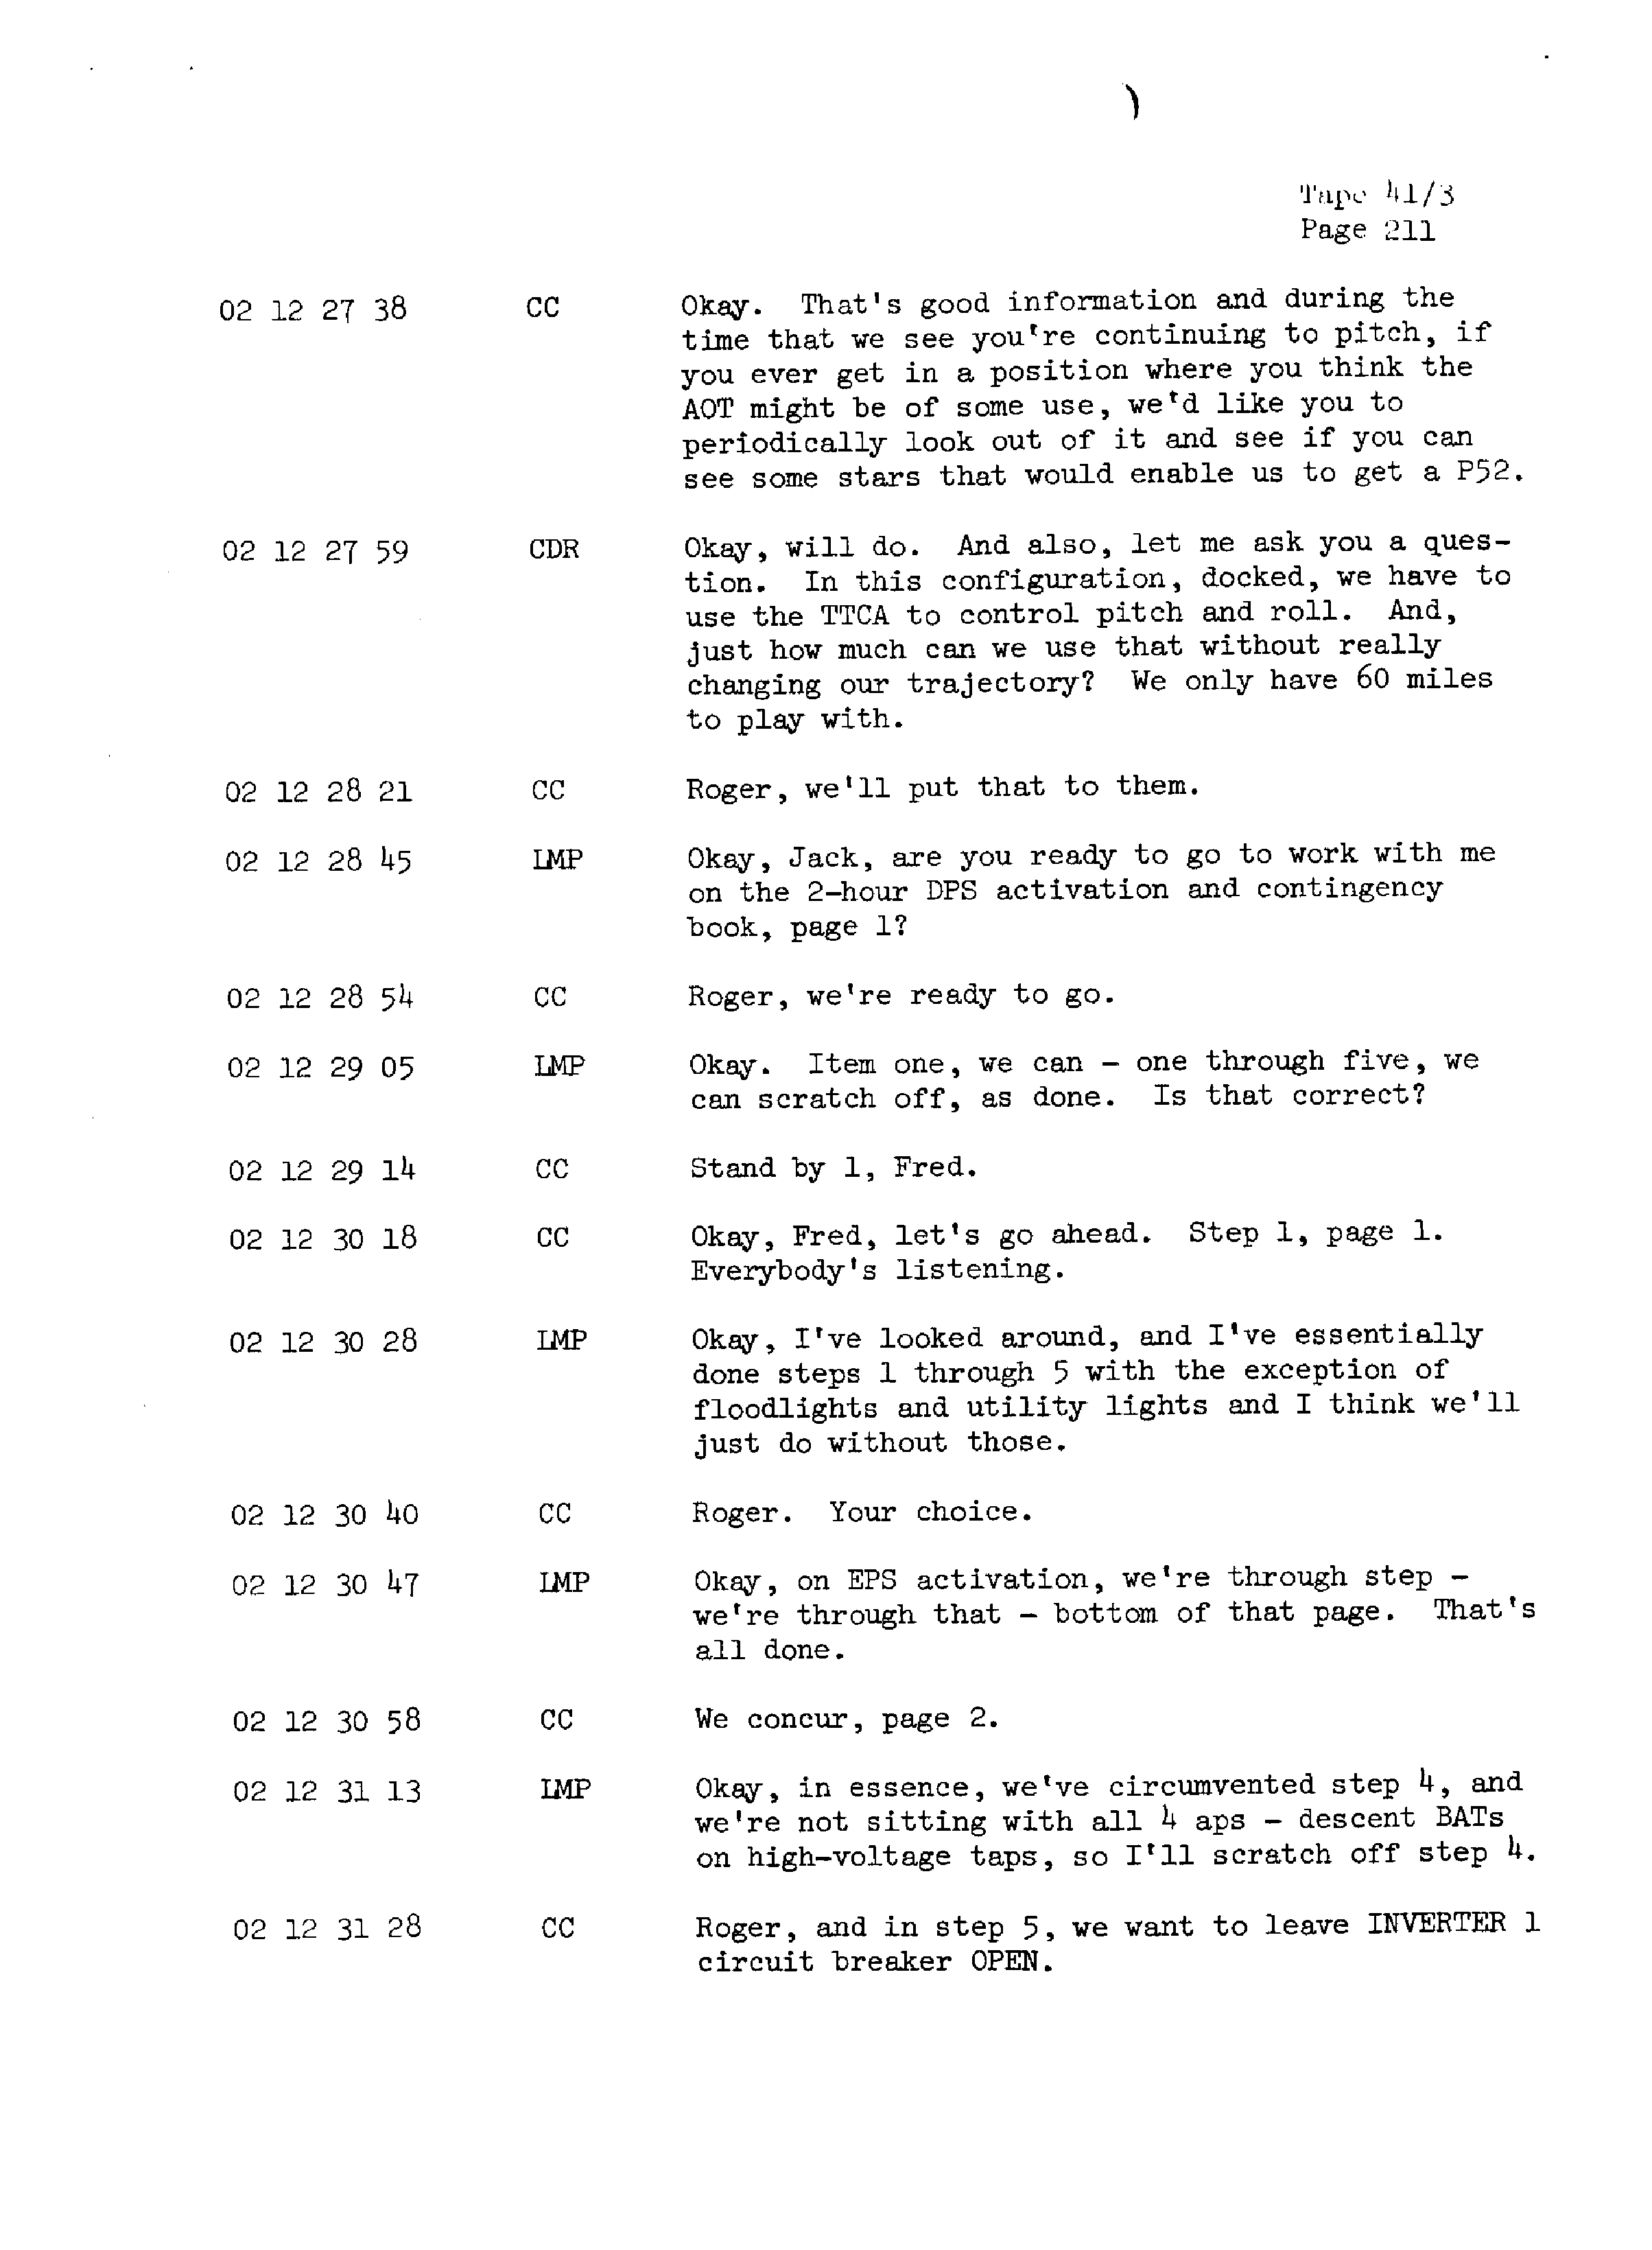 Page 218 of Apollo 13’s original transcript